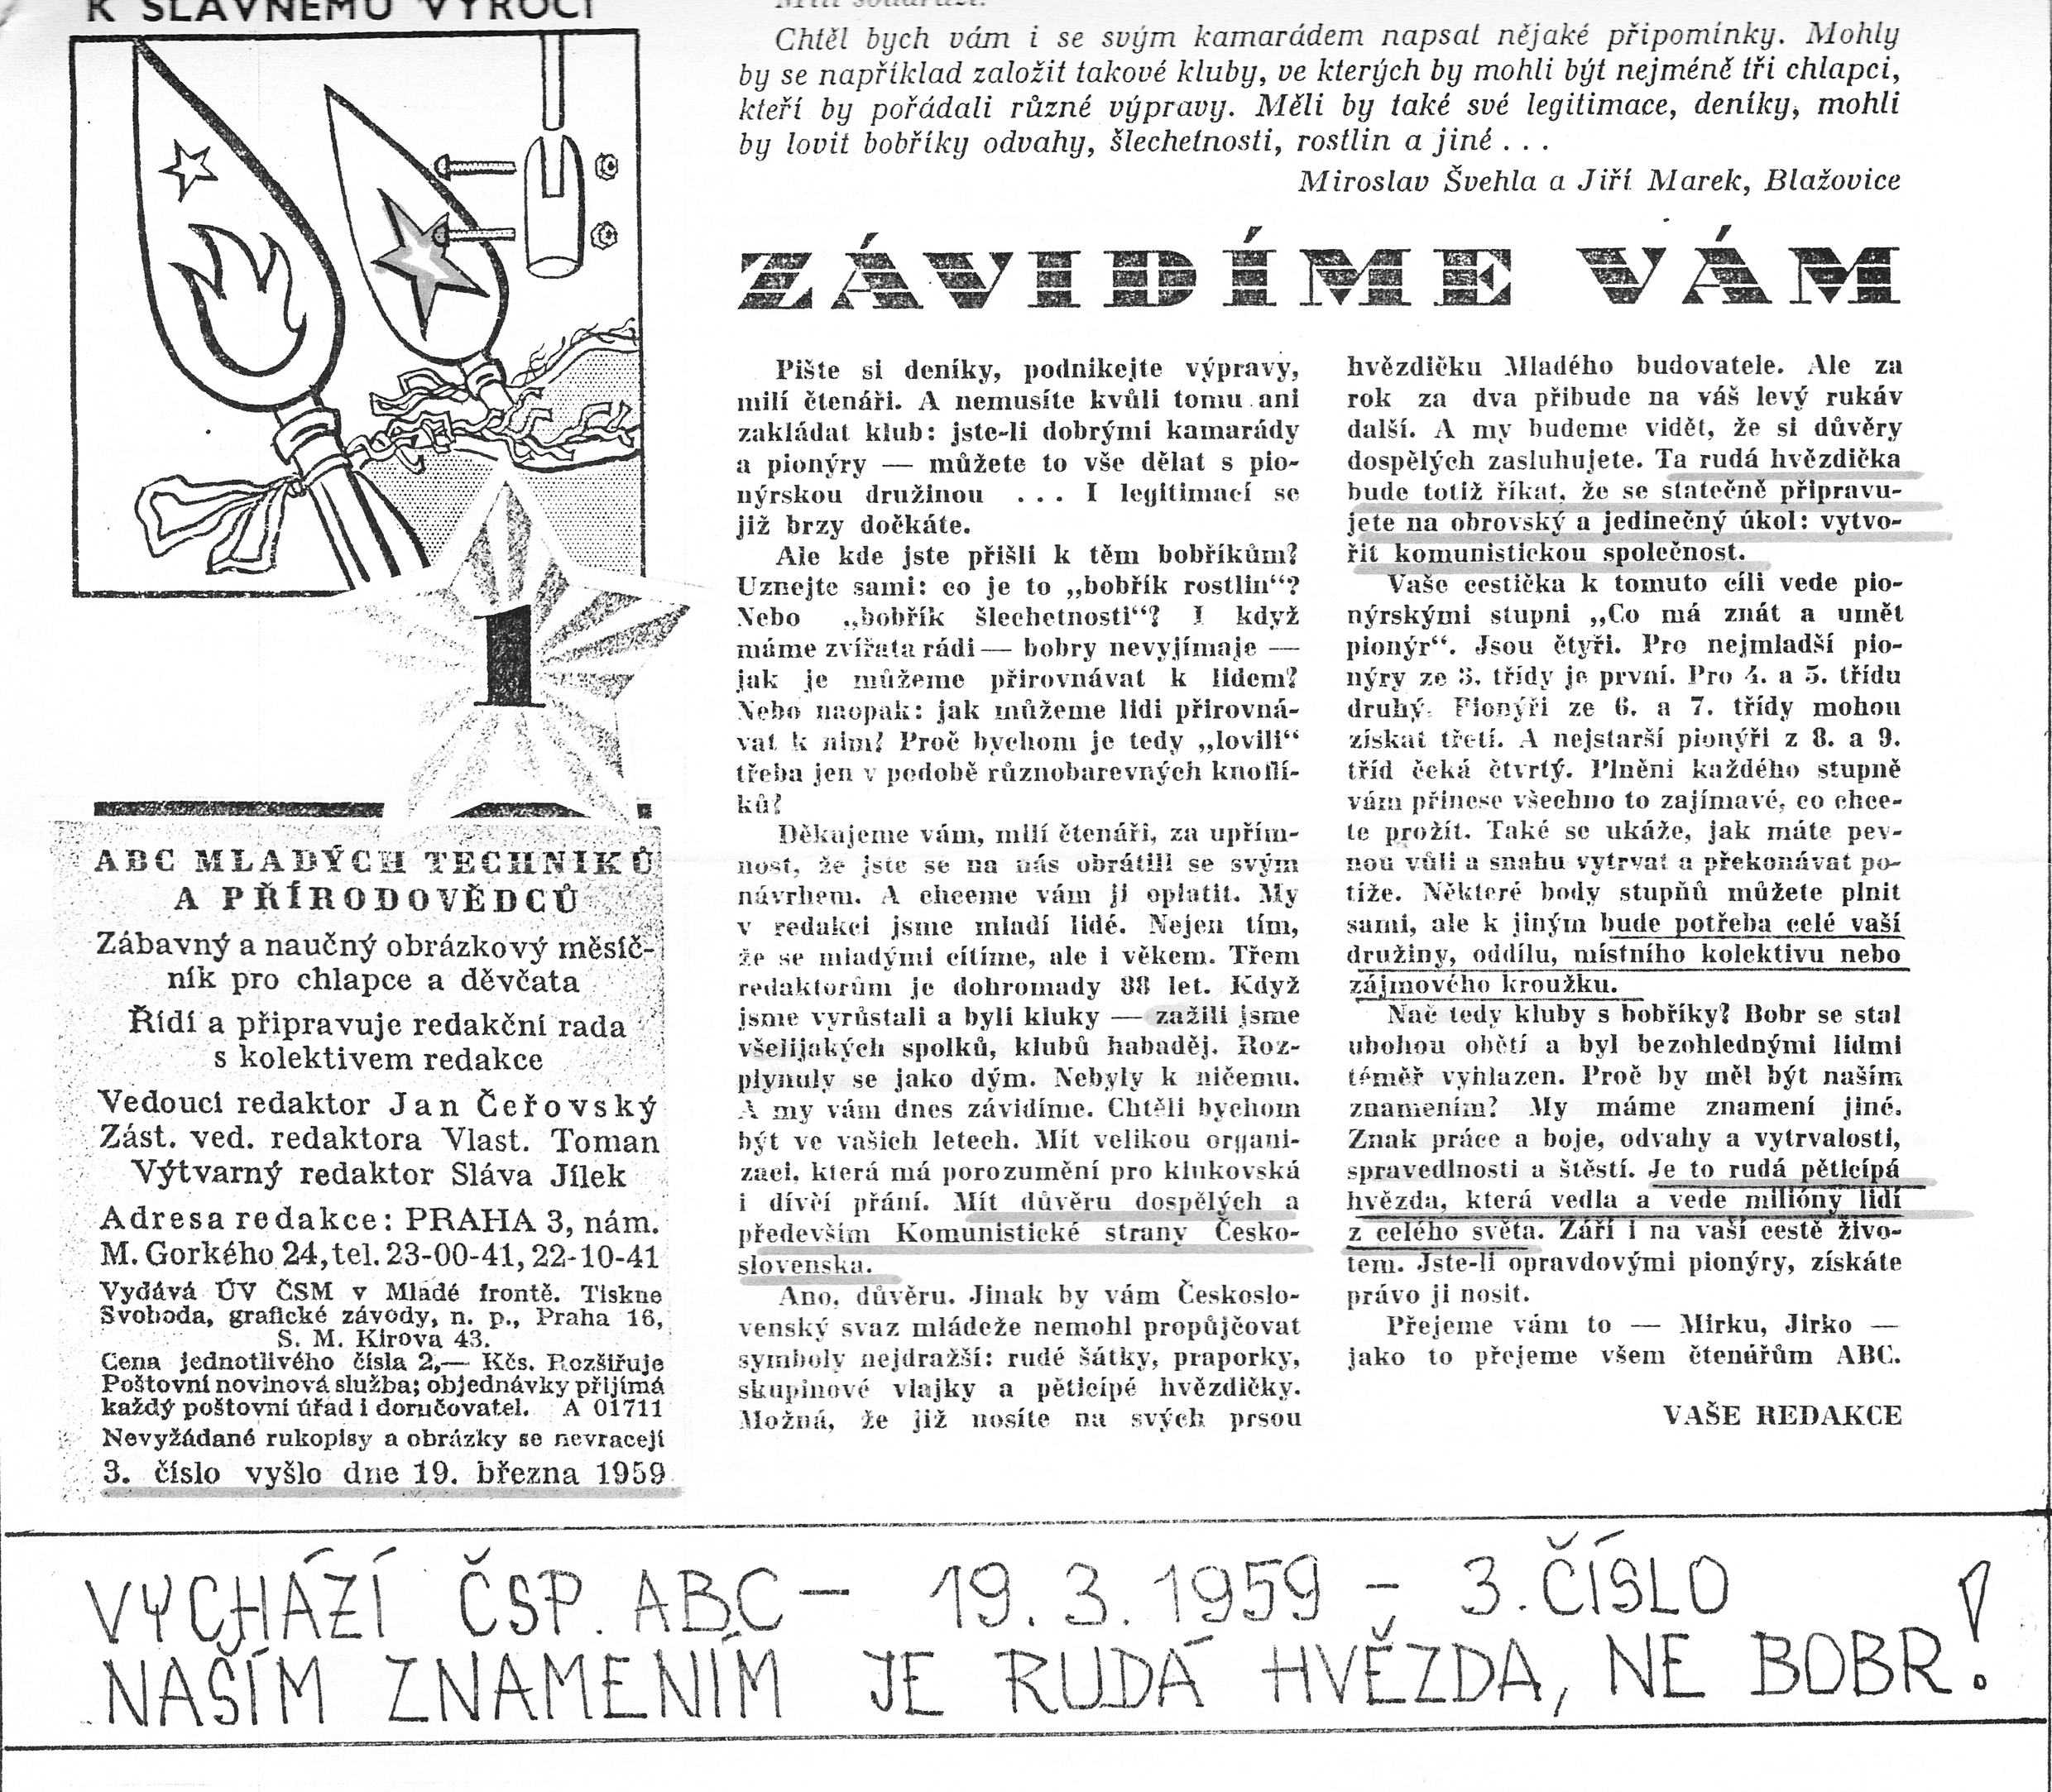 Obrázek ke článku Naším znamením je <font color=red>RUDÁ HVĚZDA</font>, ne BOBR - 19. března 1959 vyšlo 3. číslo časopisu Abc mladých techniků a přírodovědců